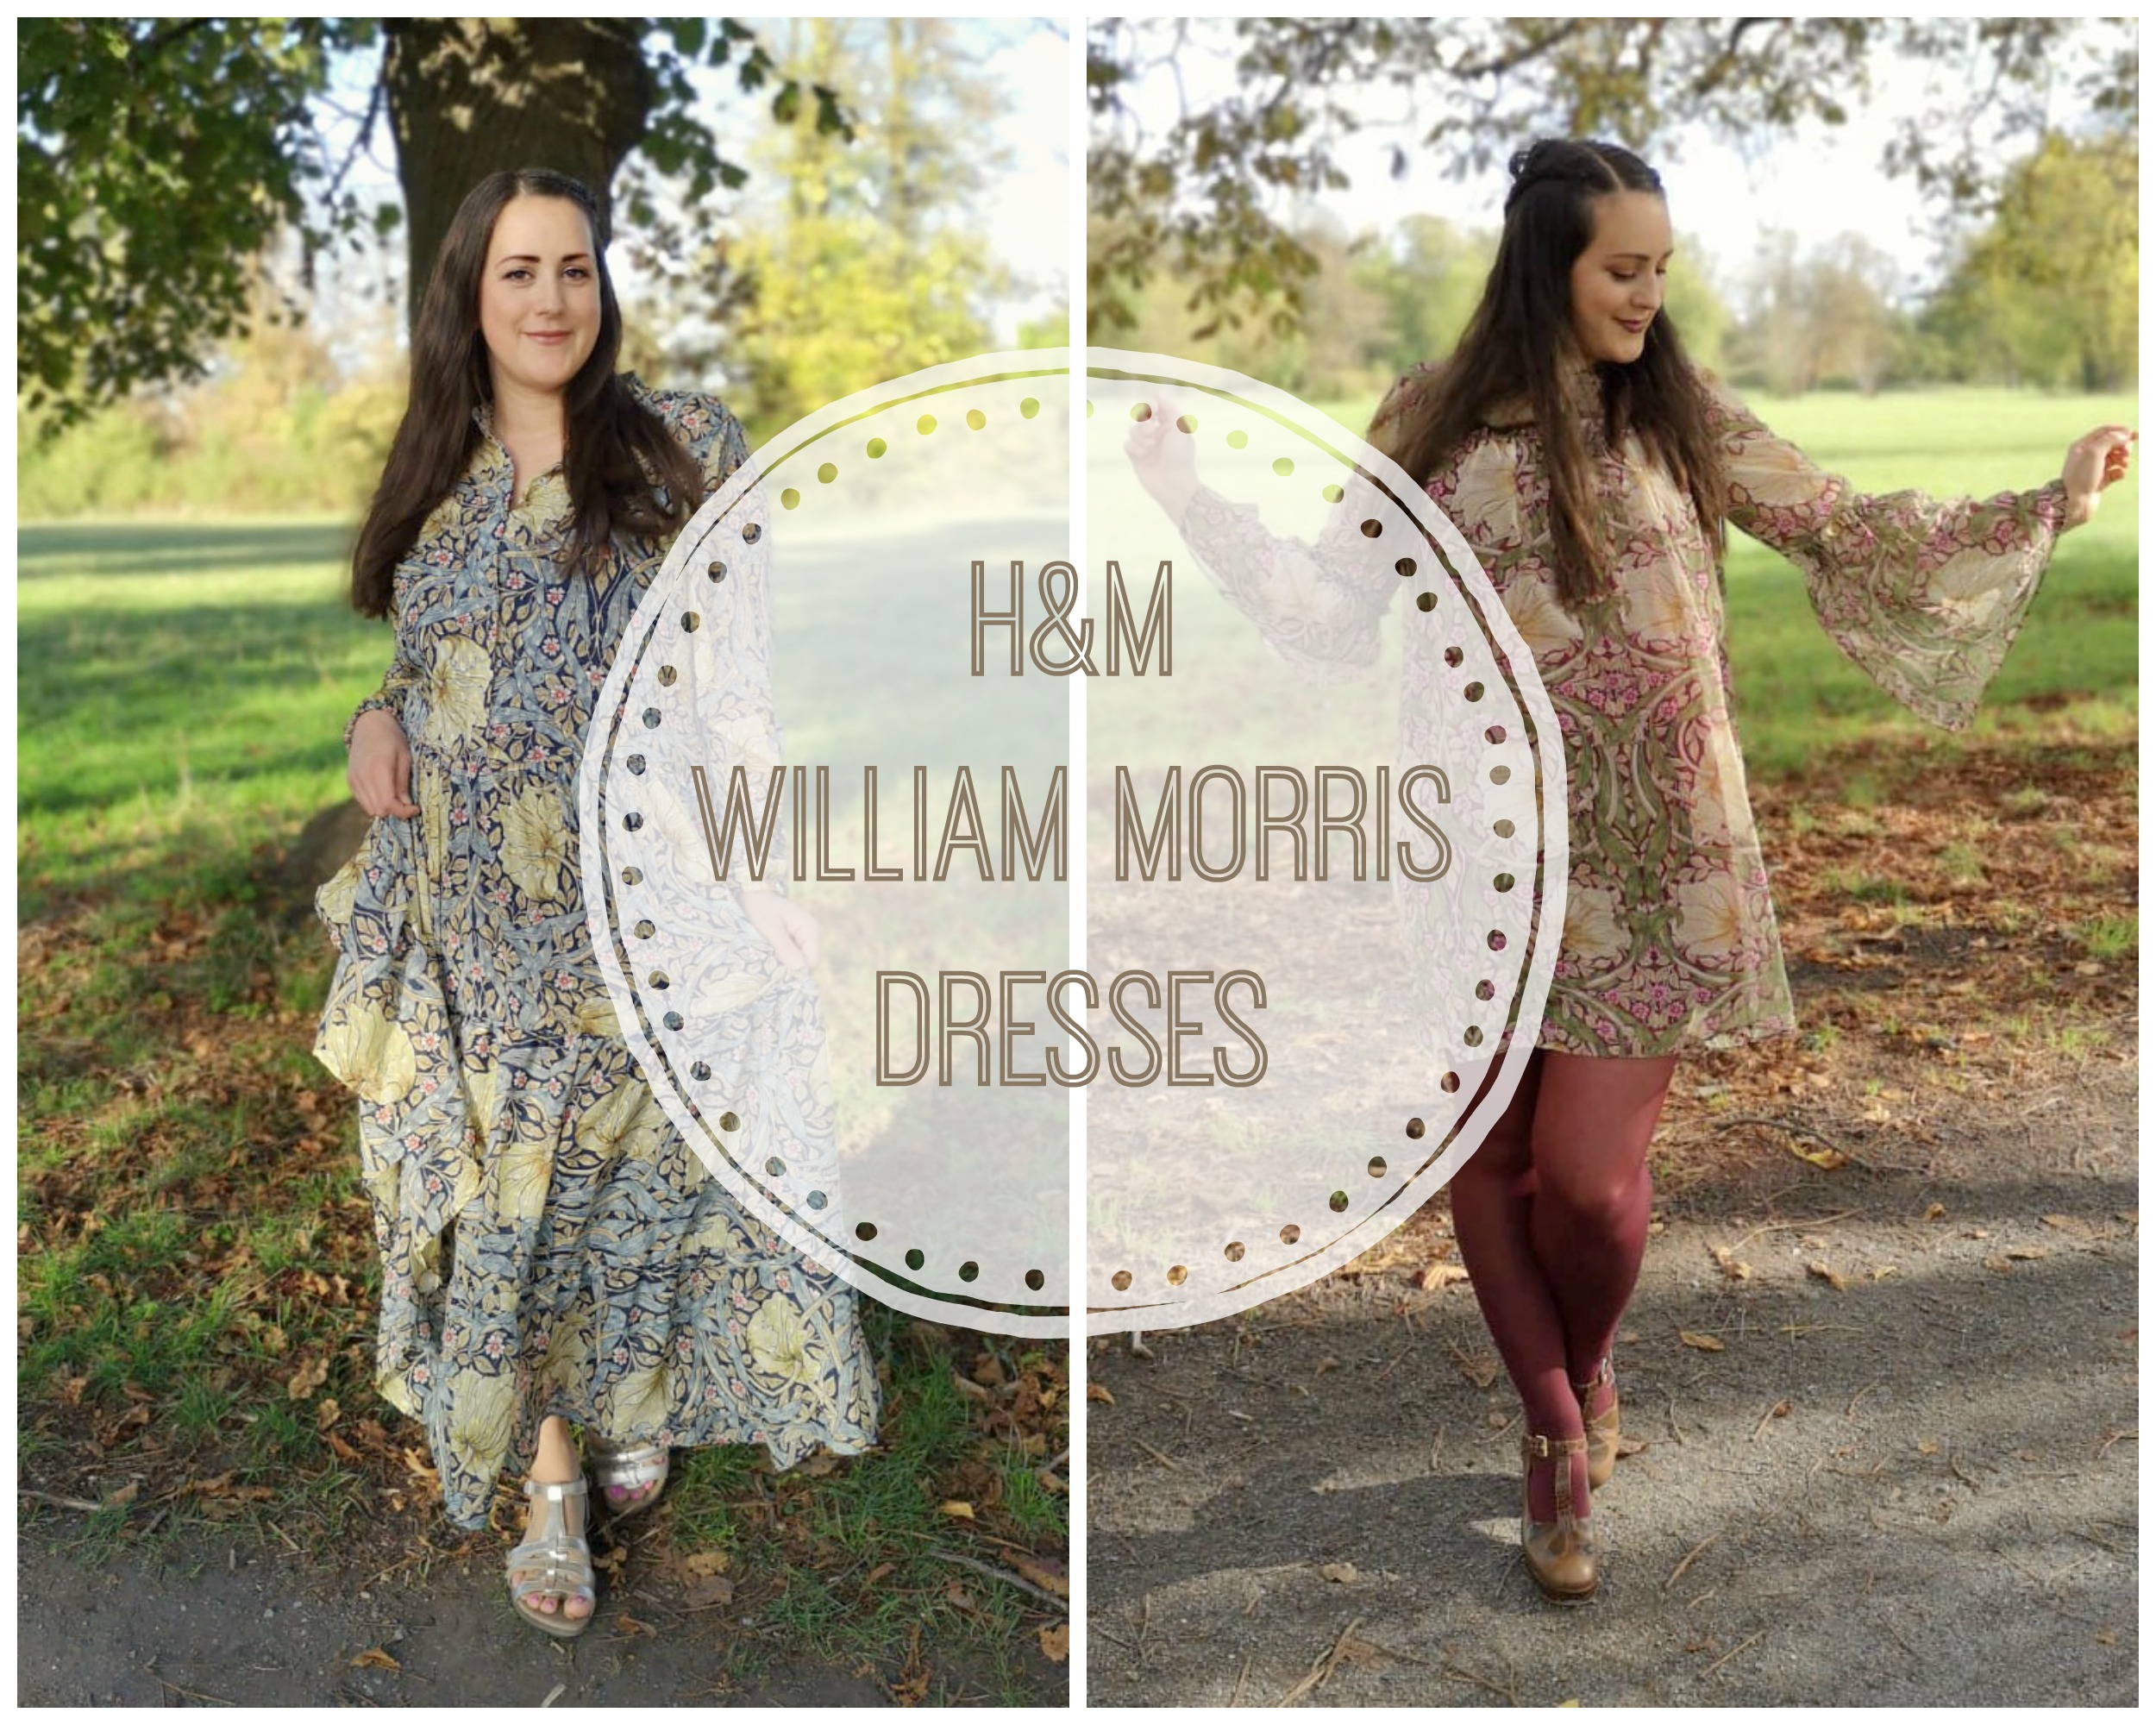 h&m william morris dress